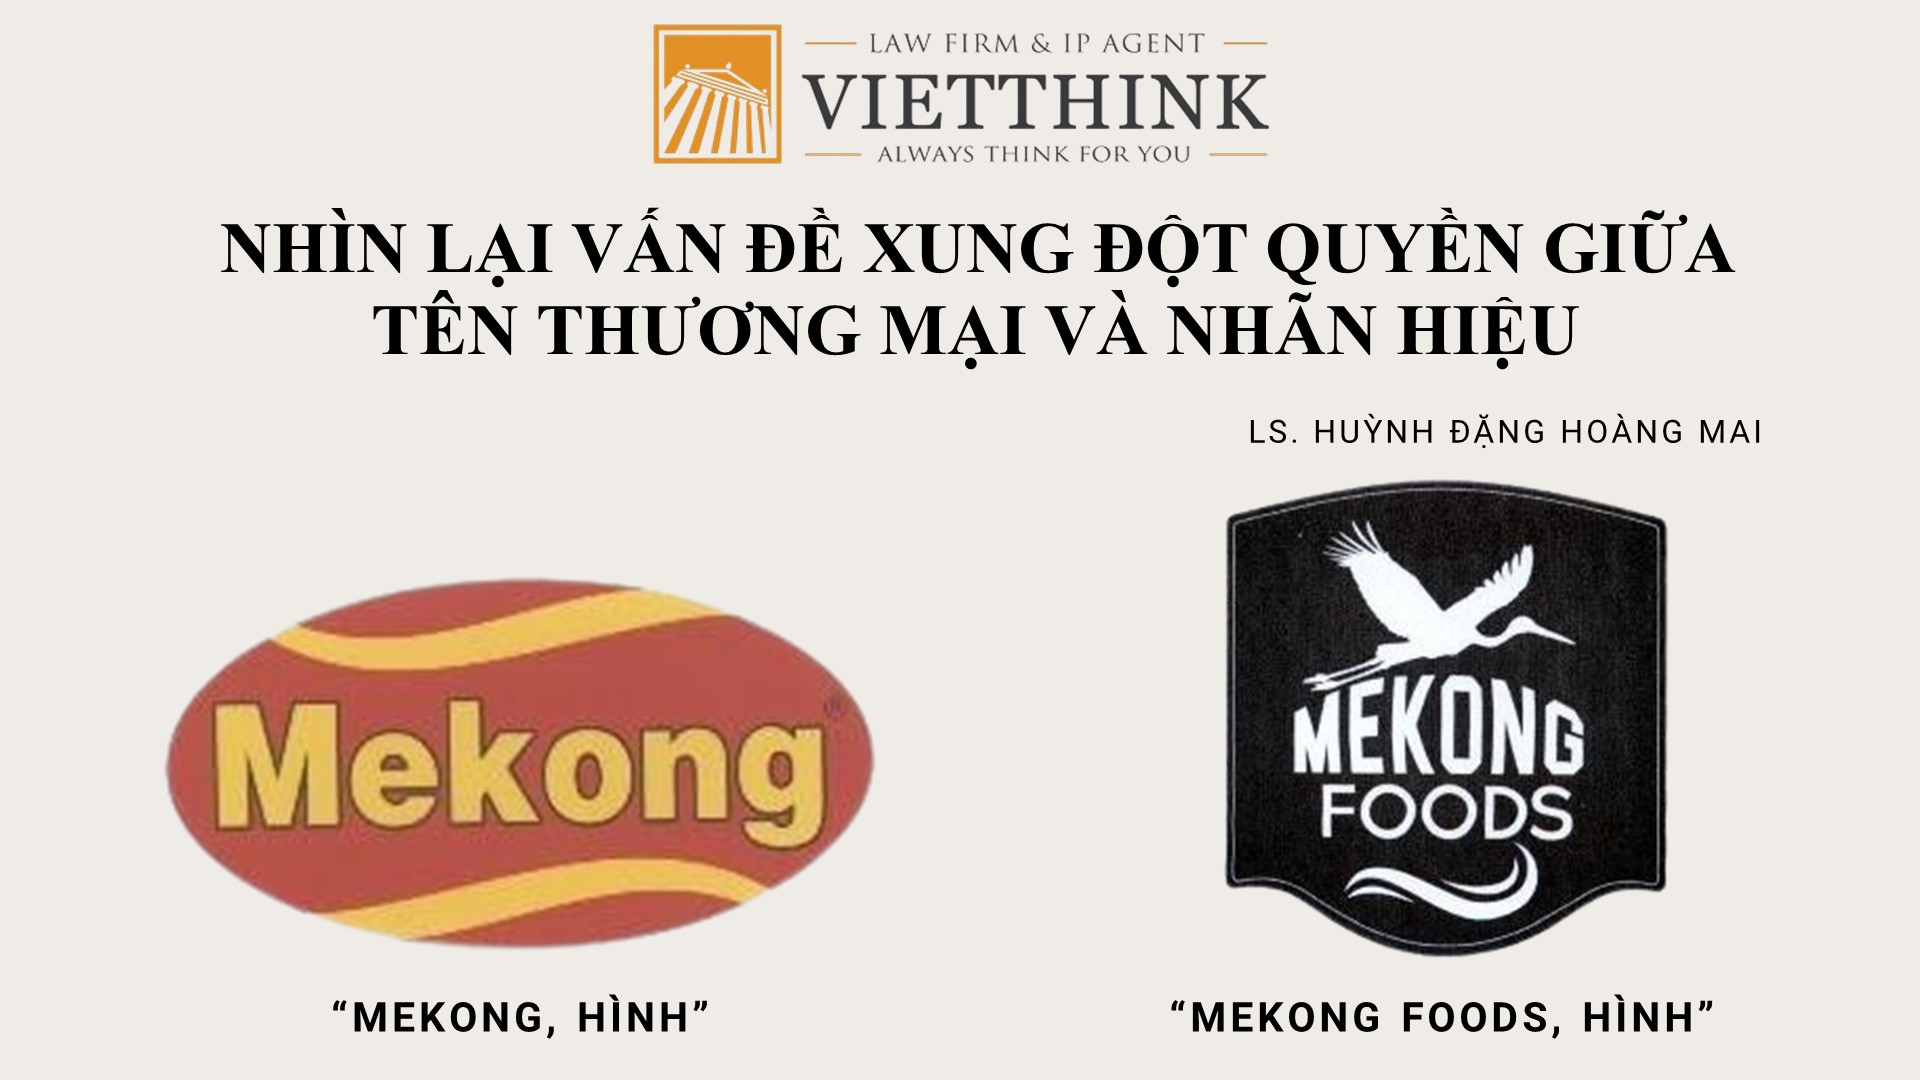 Từ vụ án tranh chấp nhãn hiệu “MEKONG, hình” và nhãn hiệu “MEKONG FOODS, hình”, nhìn lại vấn đề xung đột quyền giữa tên thương mại và nhãn hiệu.